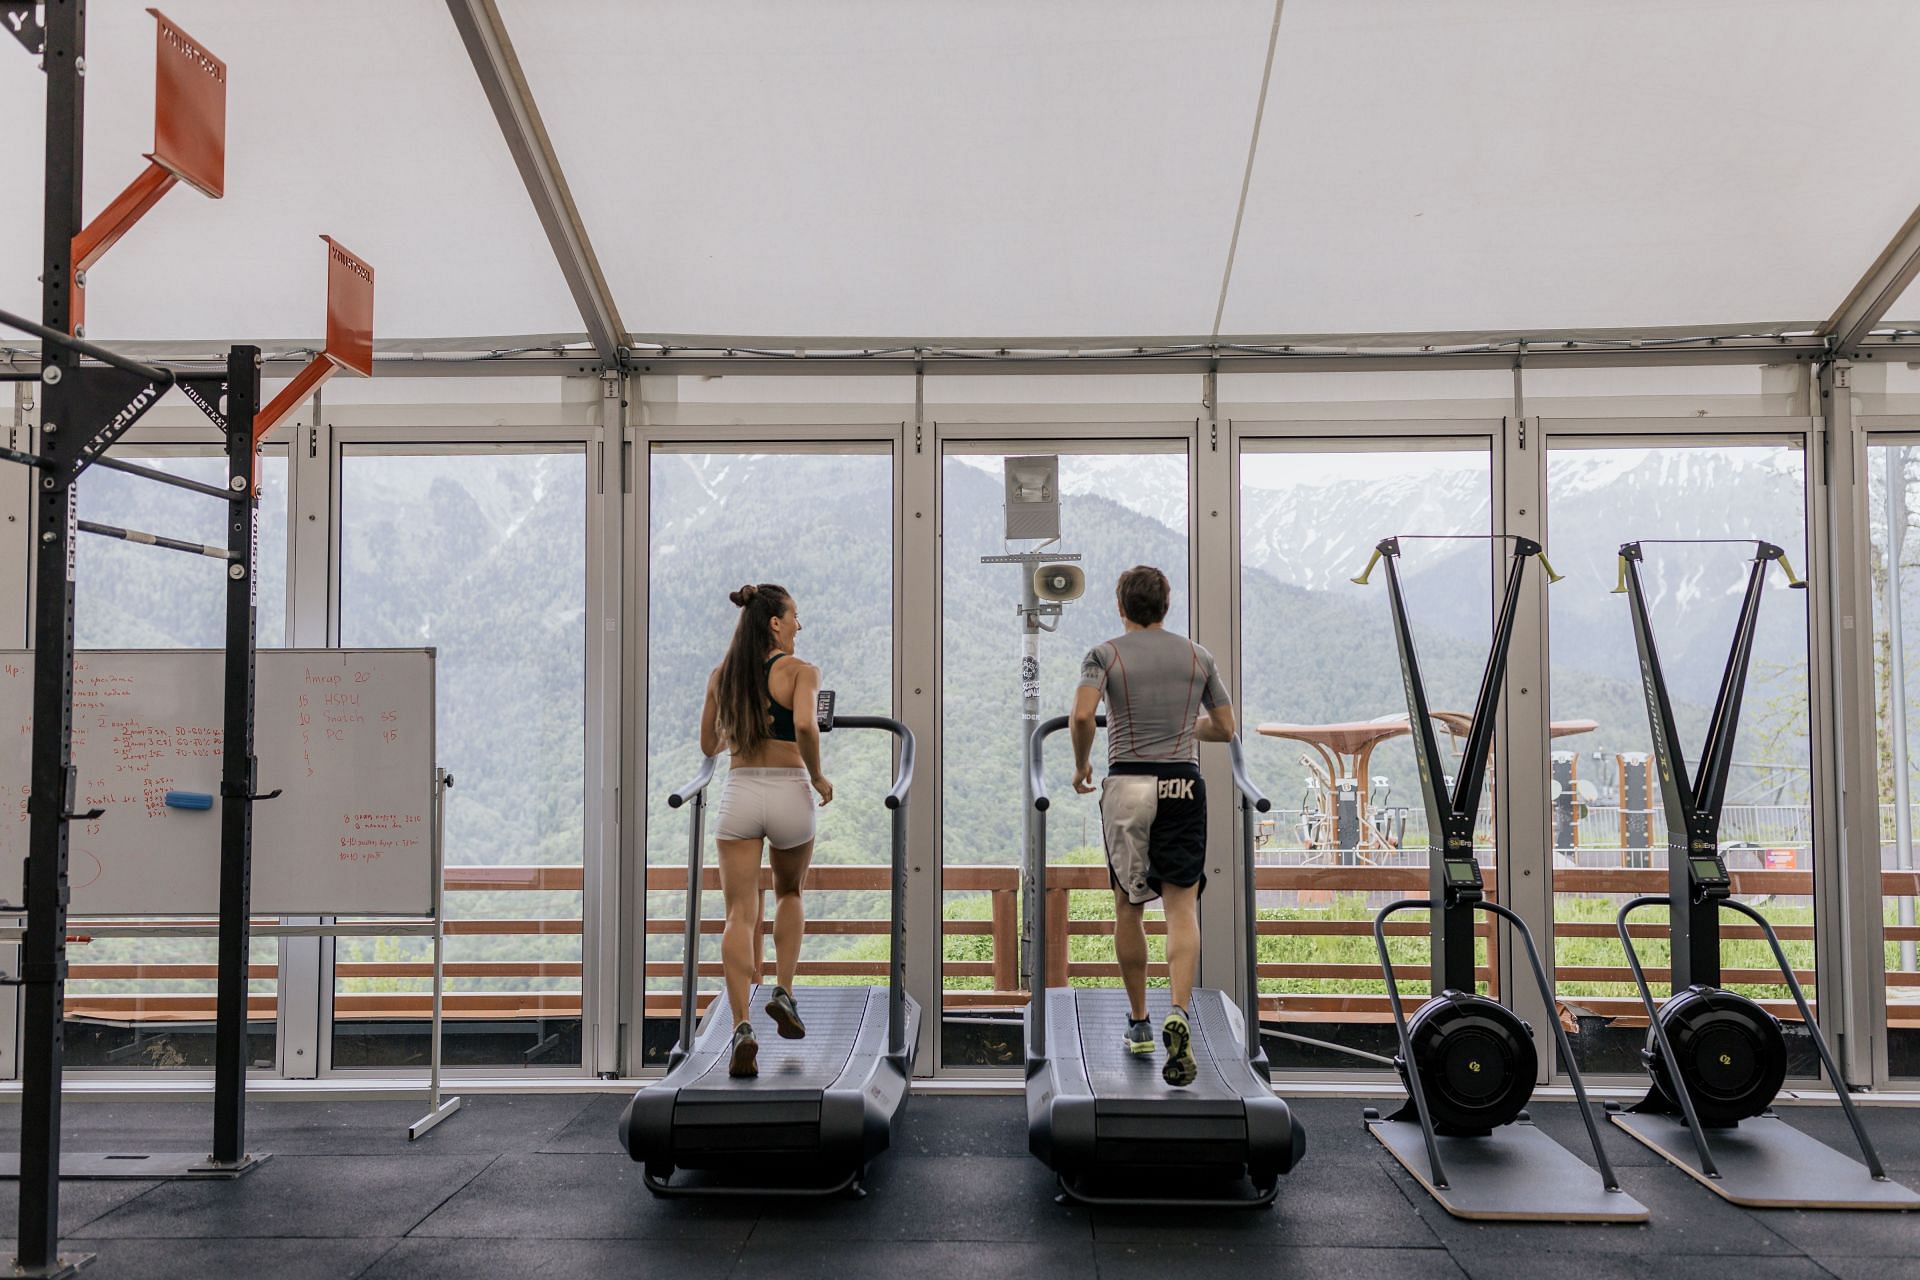 Treadmill workout (Image via Pexels/Anastasia Shuraeva)